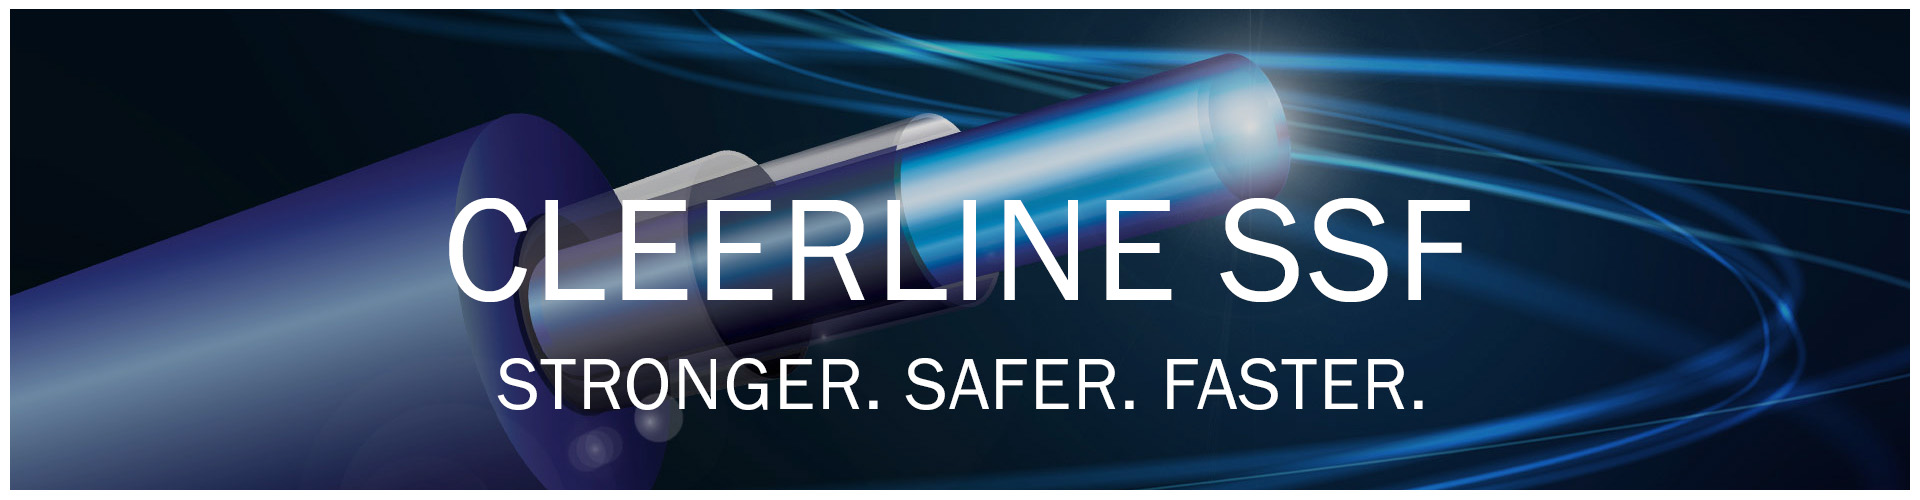 Cleerline SSF - Stonger Safer Faster - Fiber Optics Redefined